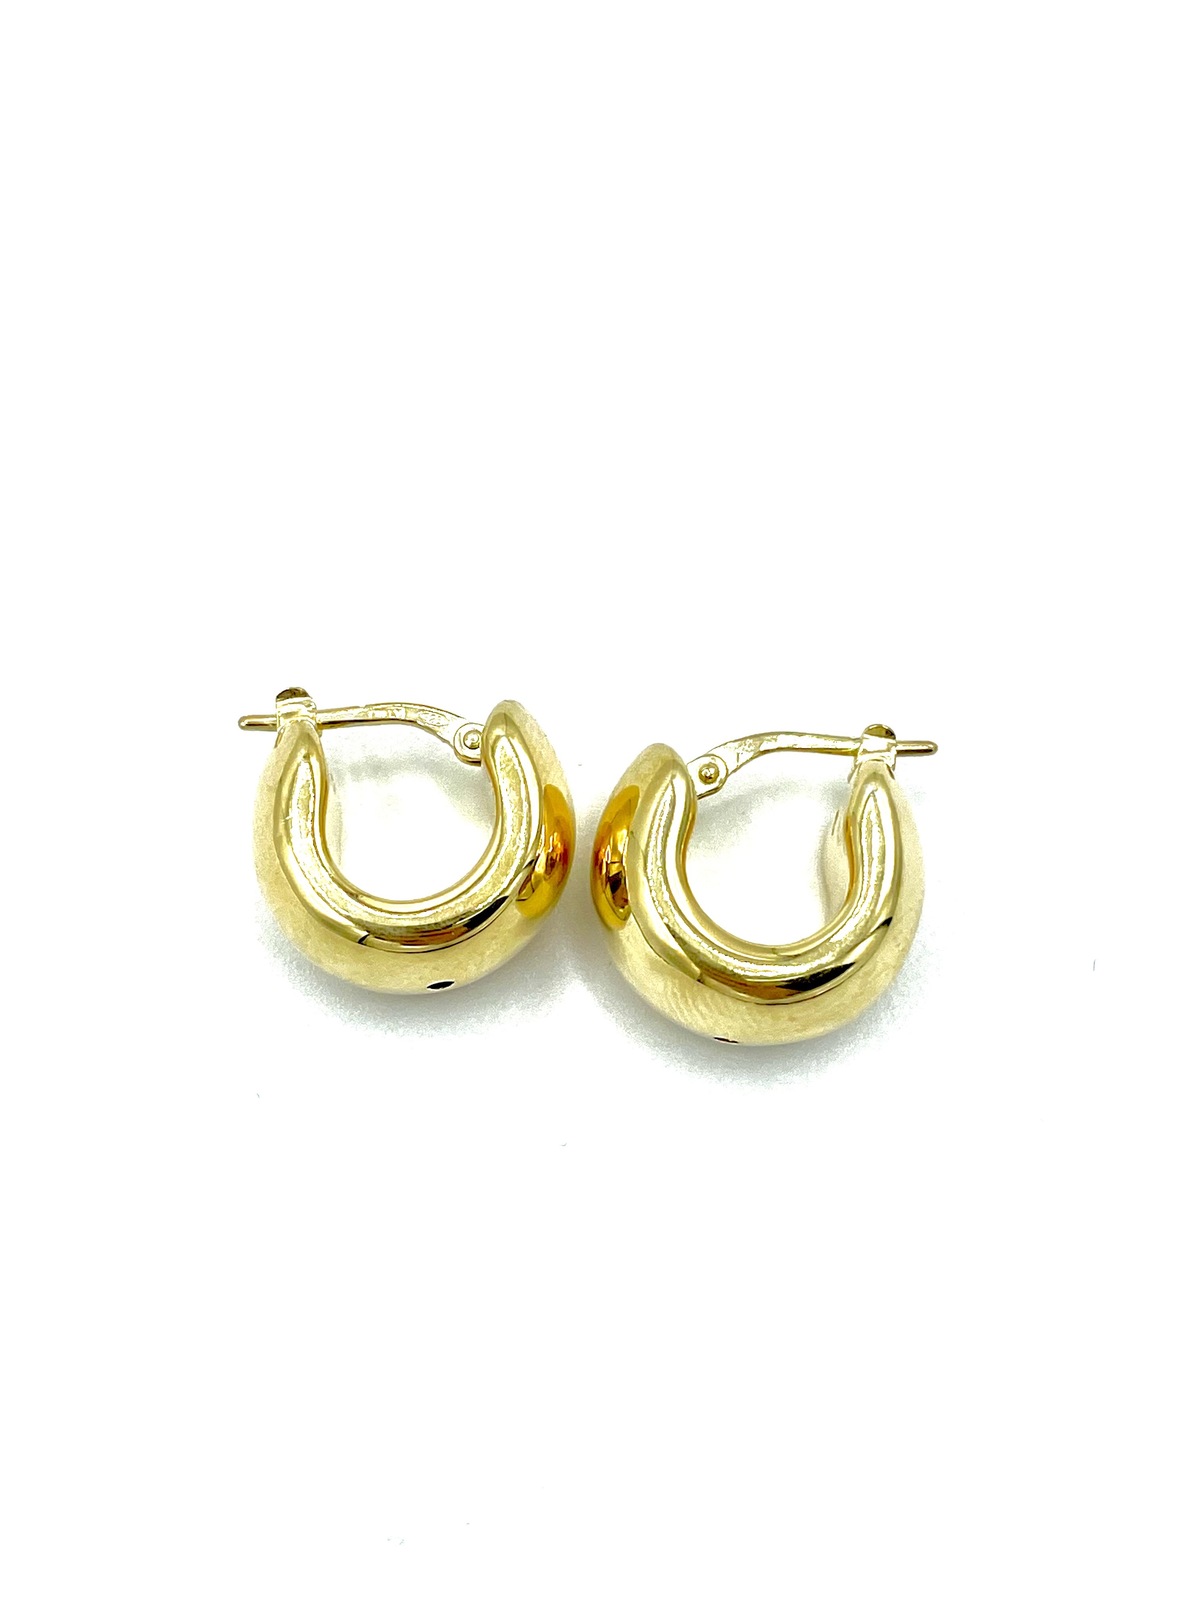 Earrings in silver tit. 925m - O385G